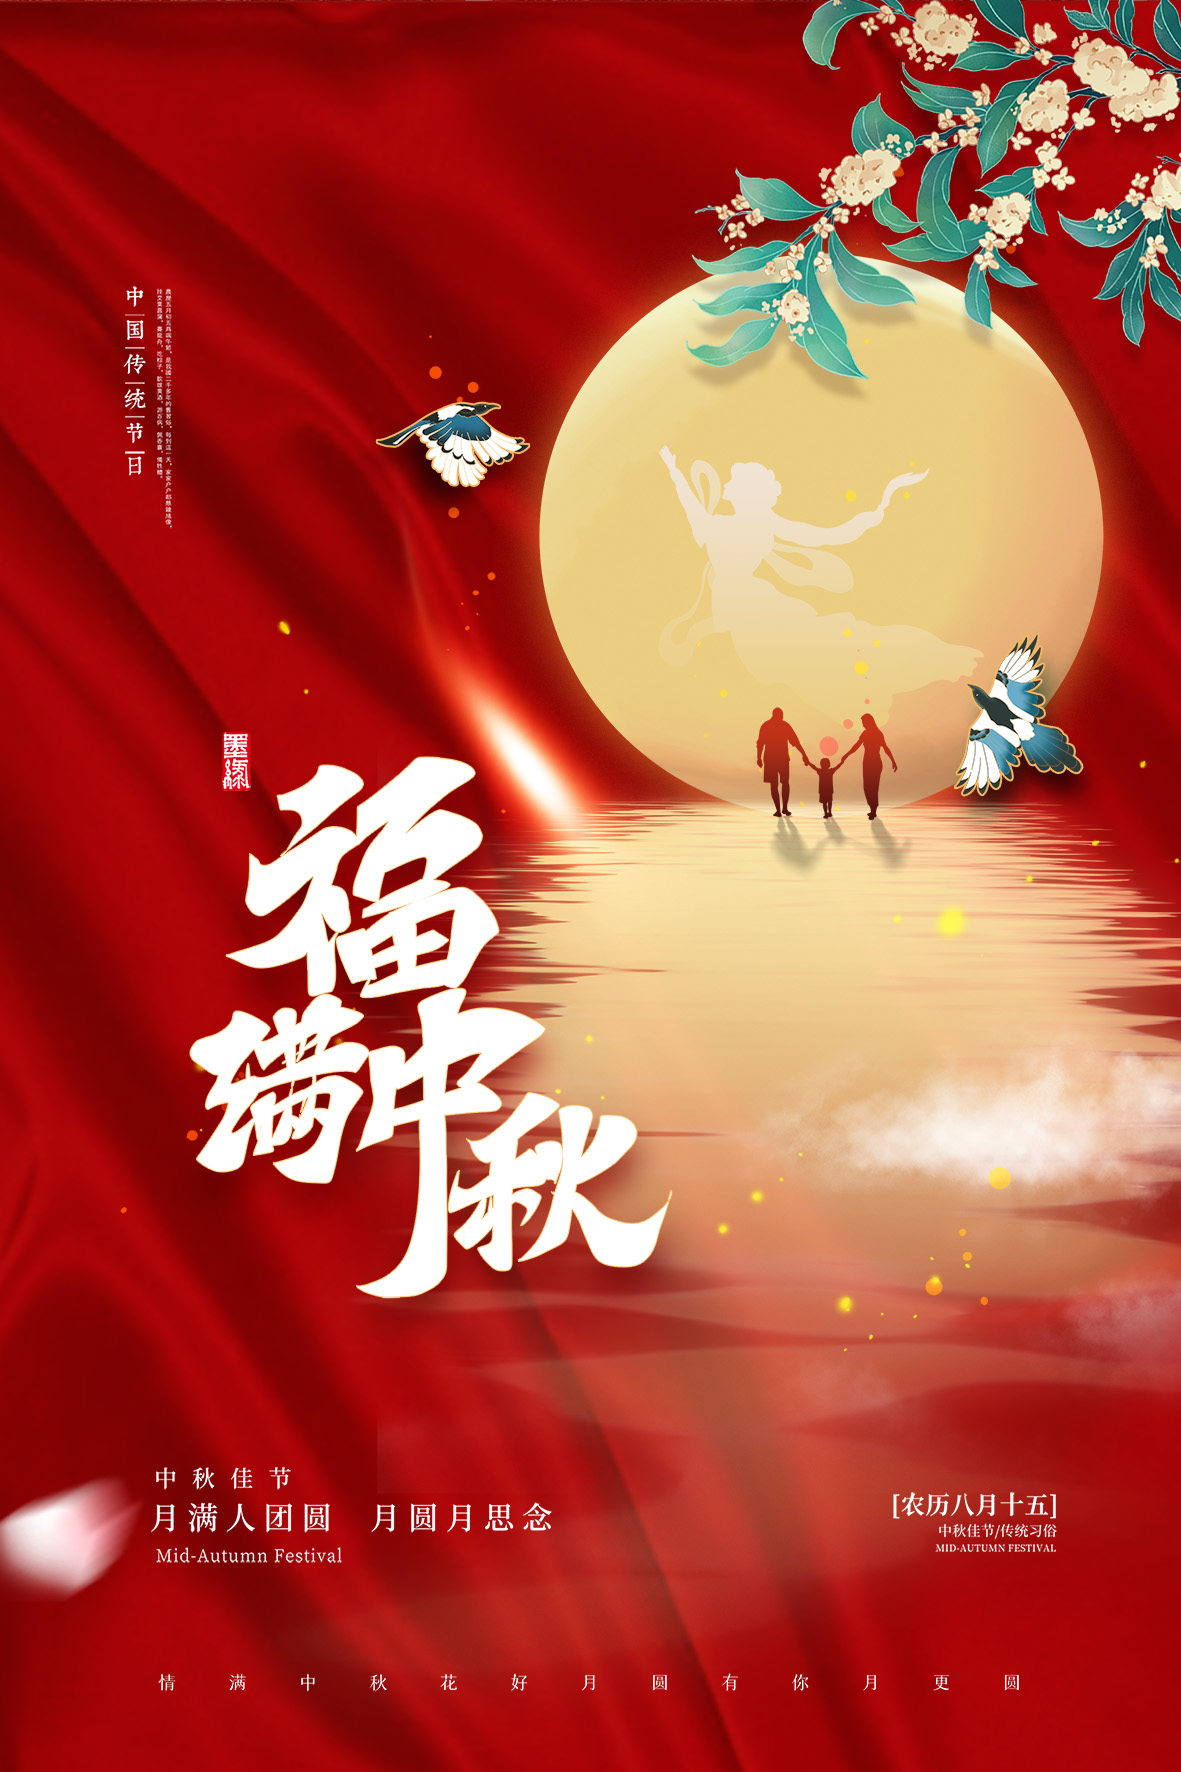 简洁中秋节活动海报